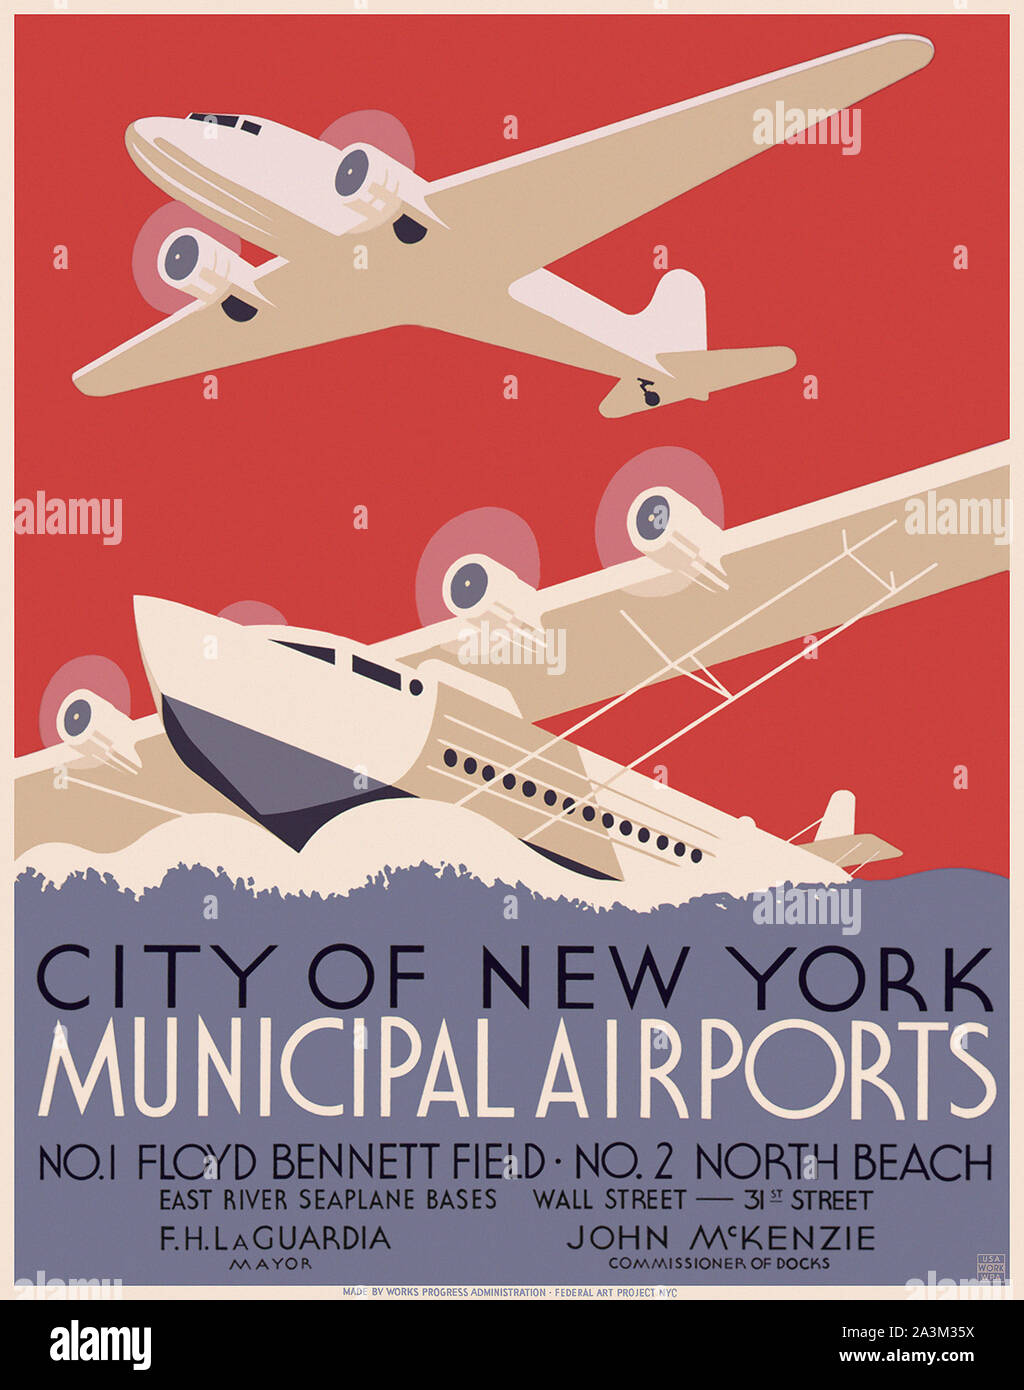 New York City aéroports municipaux - l'avancement des travaux de l'administration fédérale - Projet d'Art - affiche 1937 Banque D'Images